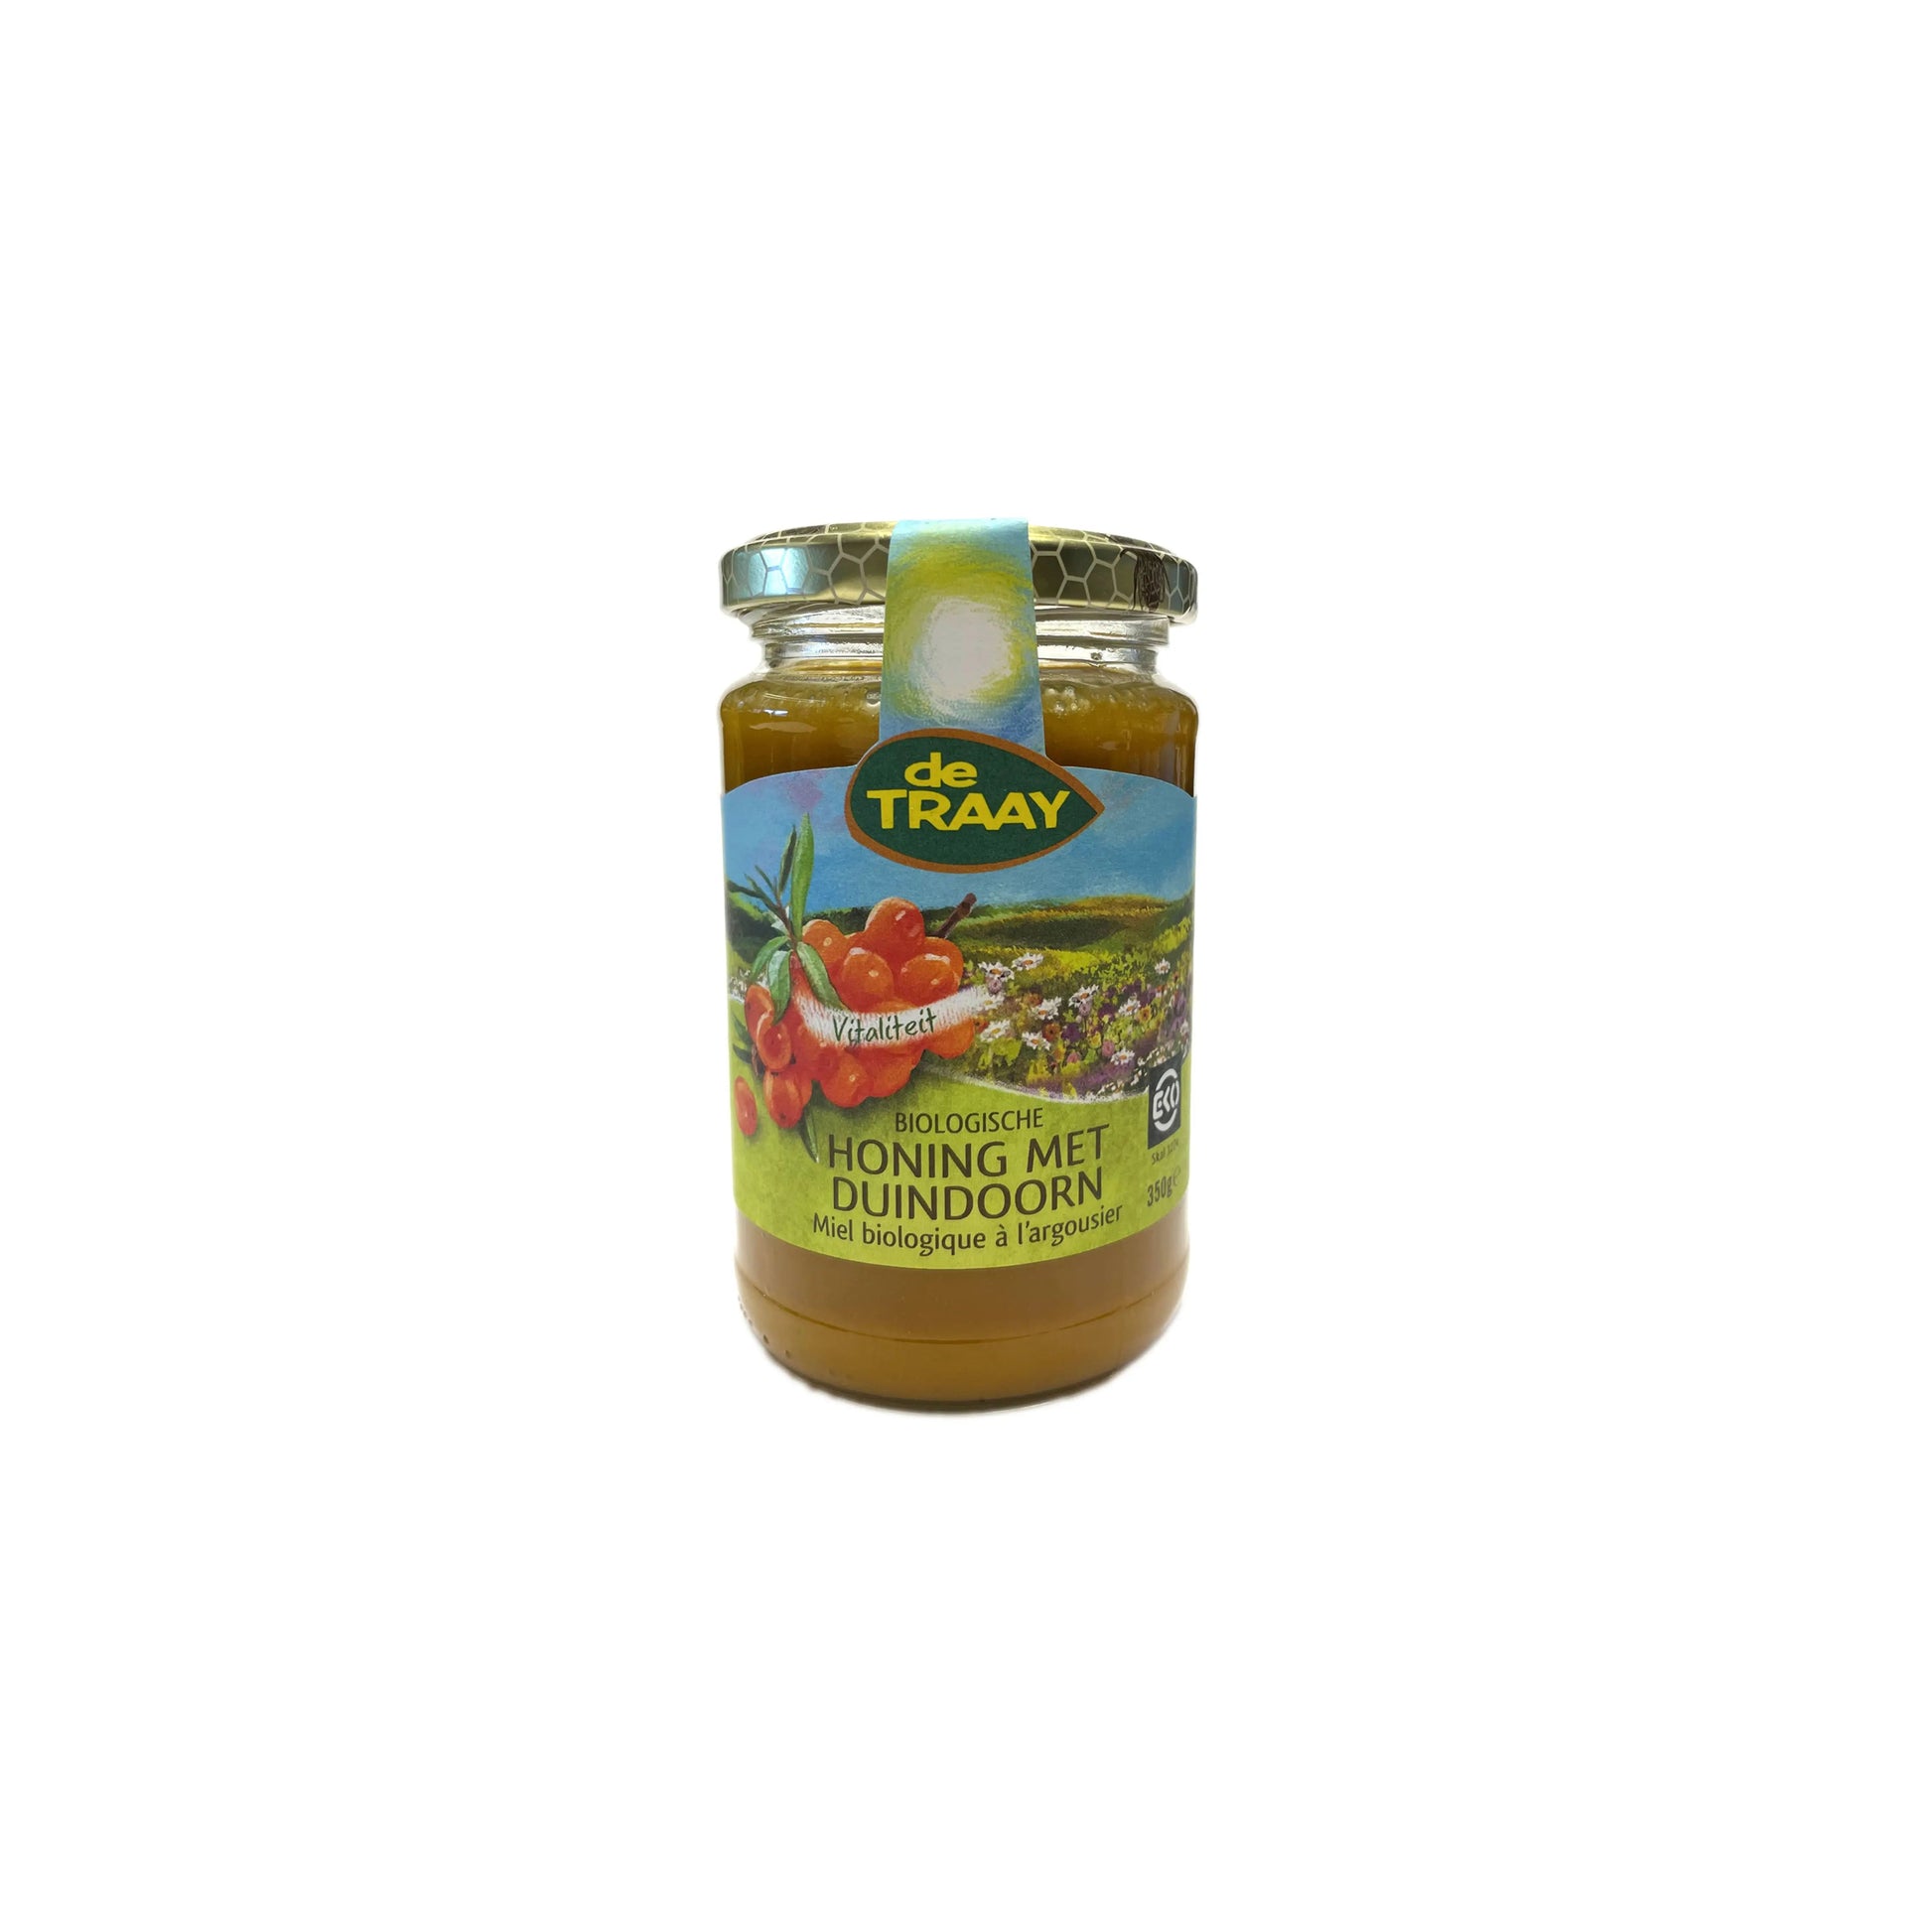 Biologische honing met Duindoorn 350g de Traay (crème) - Honingwinkel